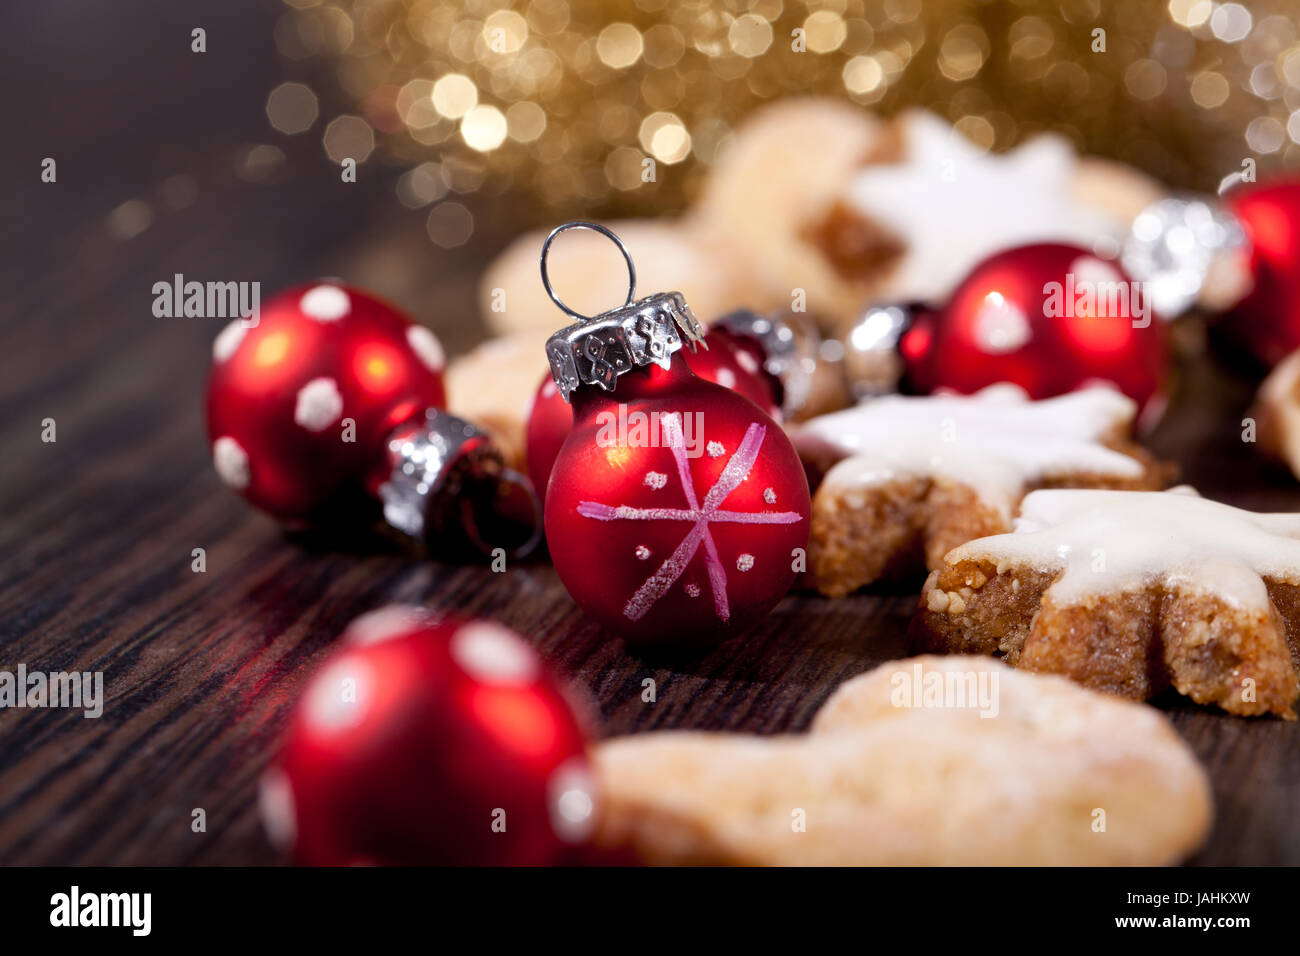 weihnachtsgebäck zimtsterne und zimtstangen dekoration im winter makro nahaufnahme Stock Photo